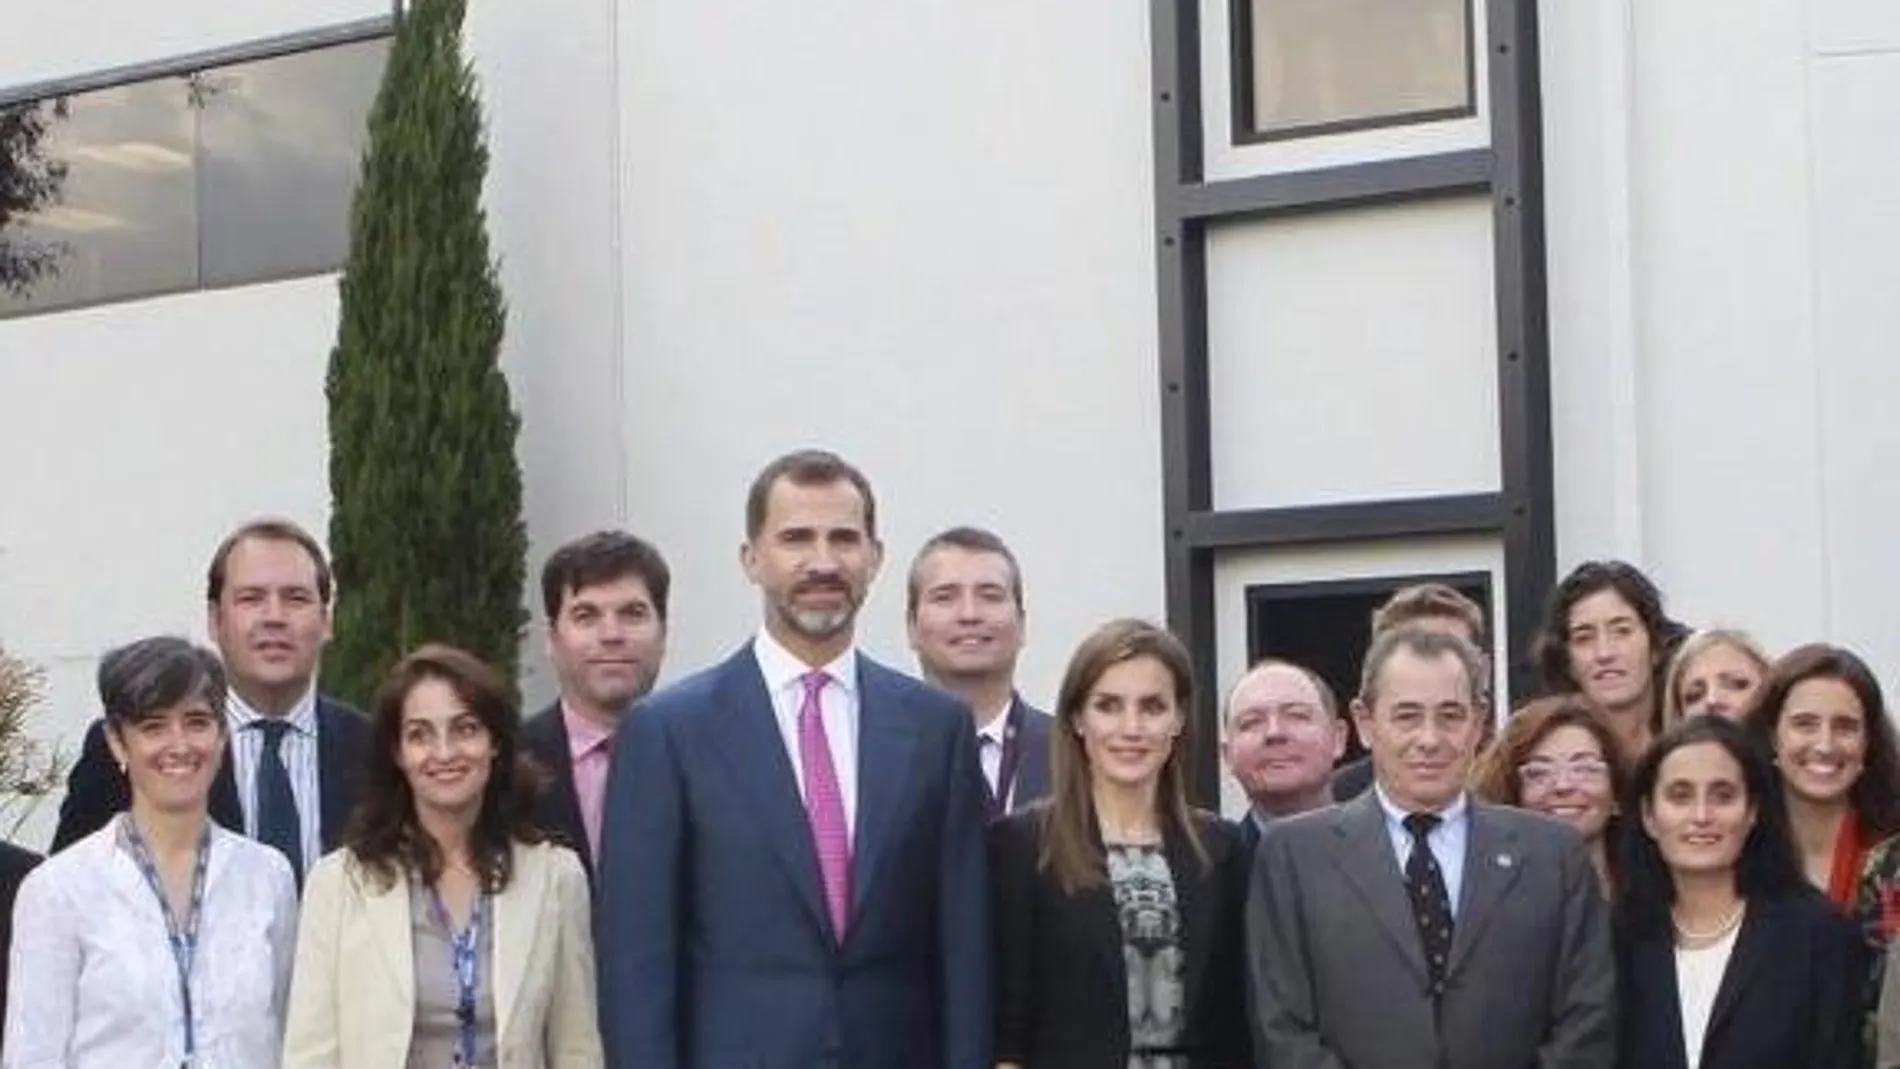 Los Príncipes de Asturias, Felipe y Letizia, acompañados por trabajadores de la empresa Grifols, durante su visita a la planta de producción de Grifols en Los Ángeles